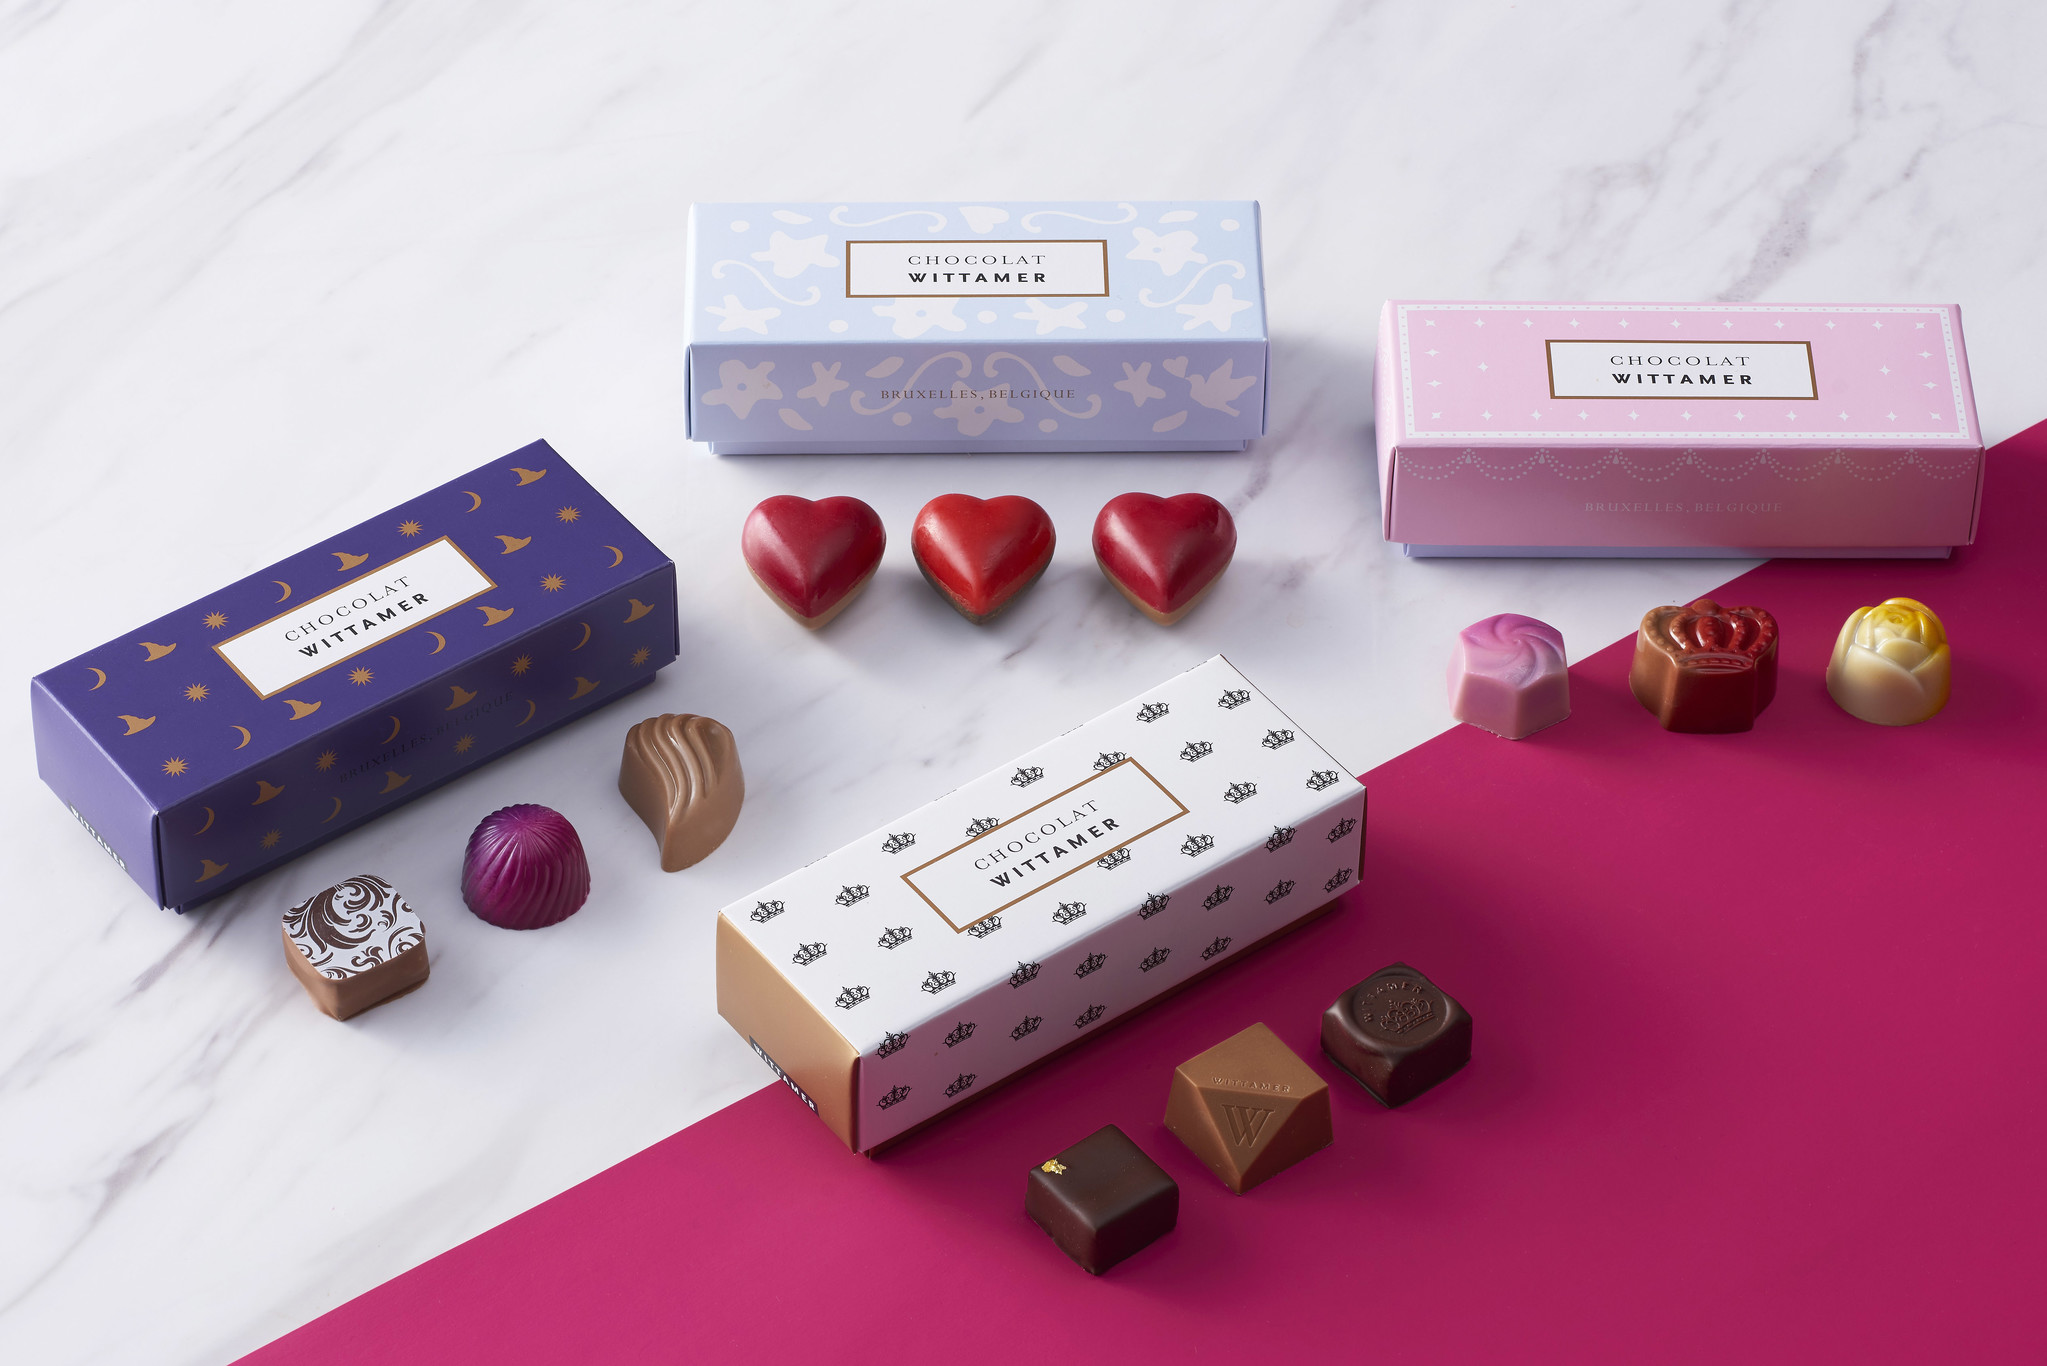 ベルギー王室御用達チョコレートブランド ヴィタメール 2021年 バレンタインの新作ショコラをご紹介します 株式会社 エーデルワイスのプレスリリース